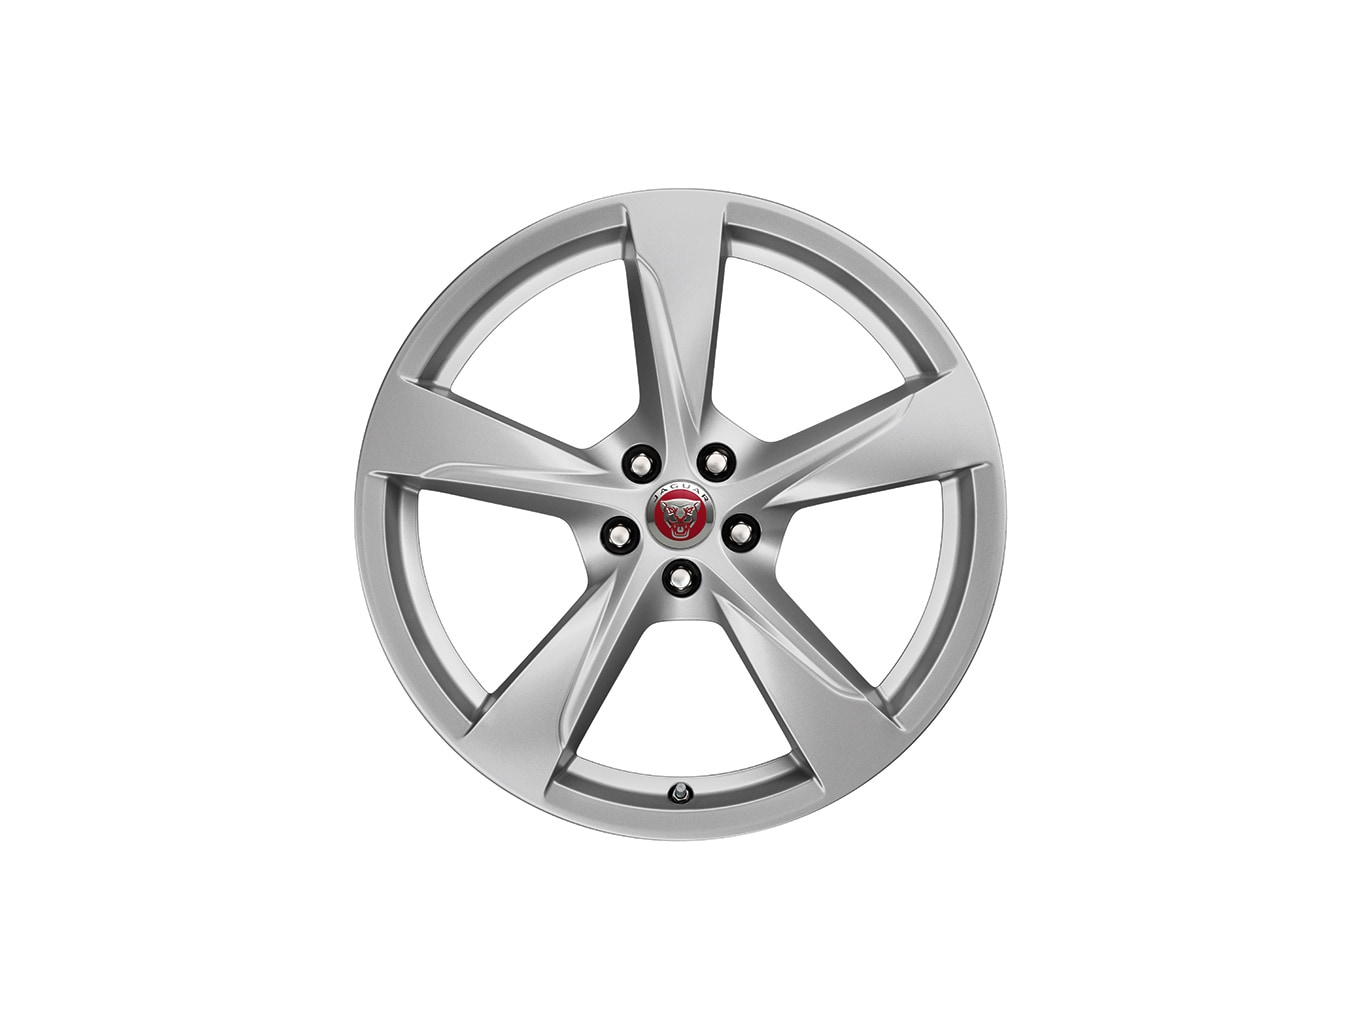 Alloy Wheel - 20" Style 5060, 5 spoke, Front